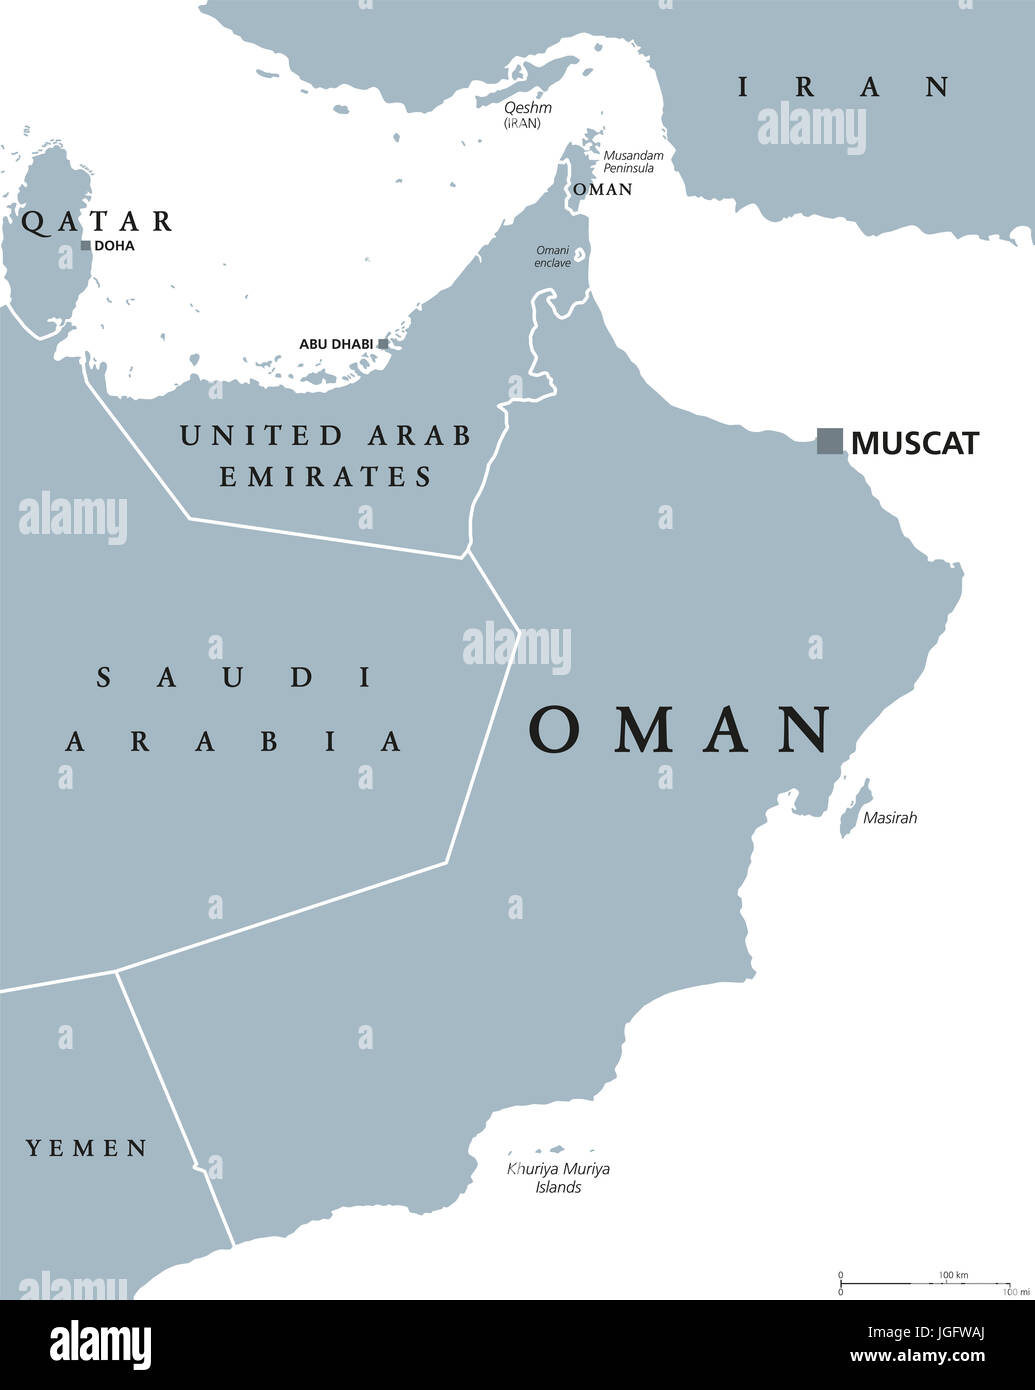 Oman mappa politico con capitale Muscat. Il sultanato e paese arabo in Asia occidentale e nel Medio Oriente sulla penisola arabica. Illustrazione di grigio. Foto Stock